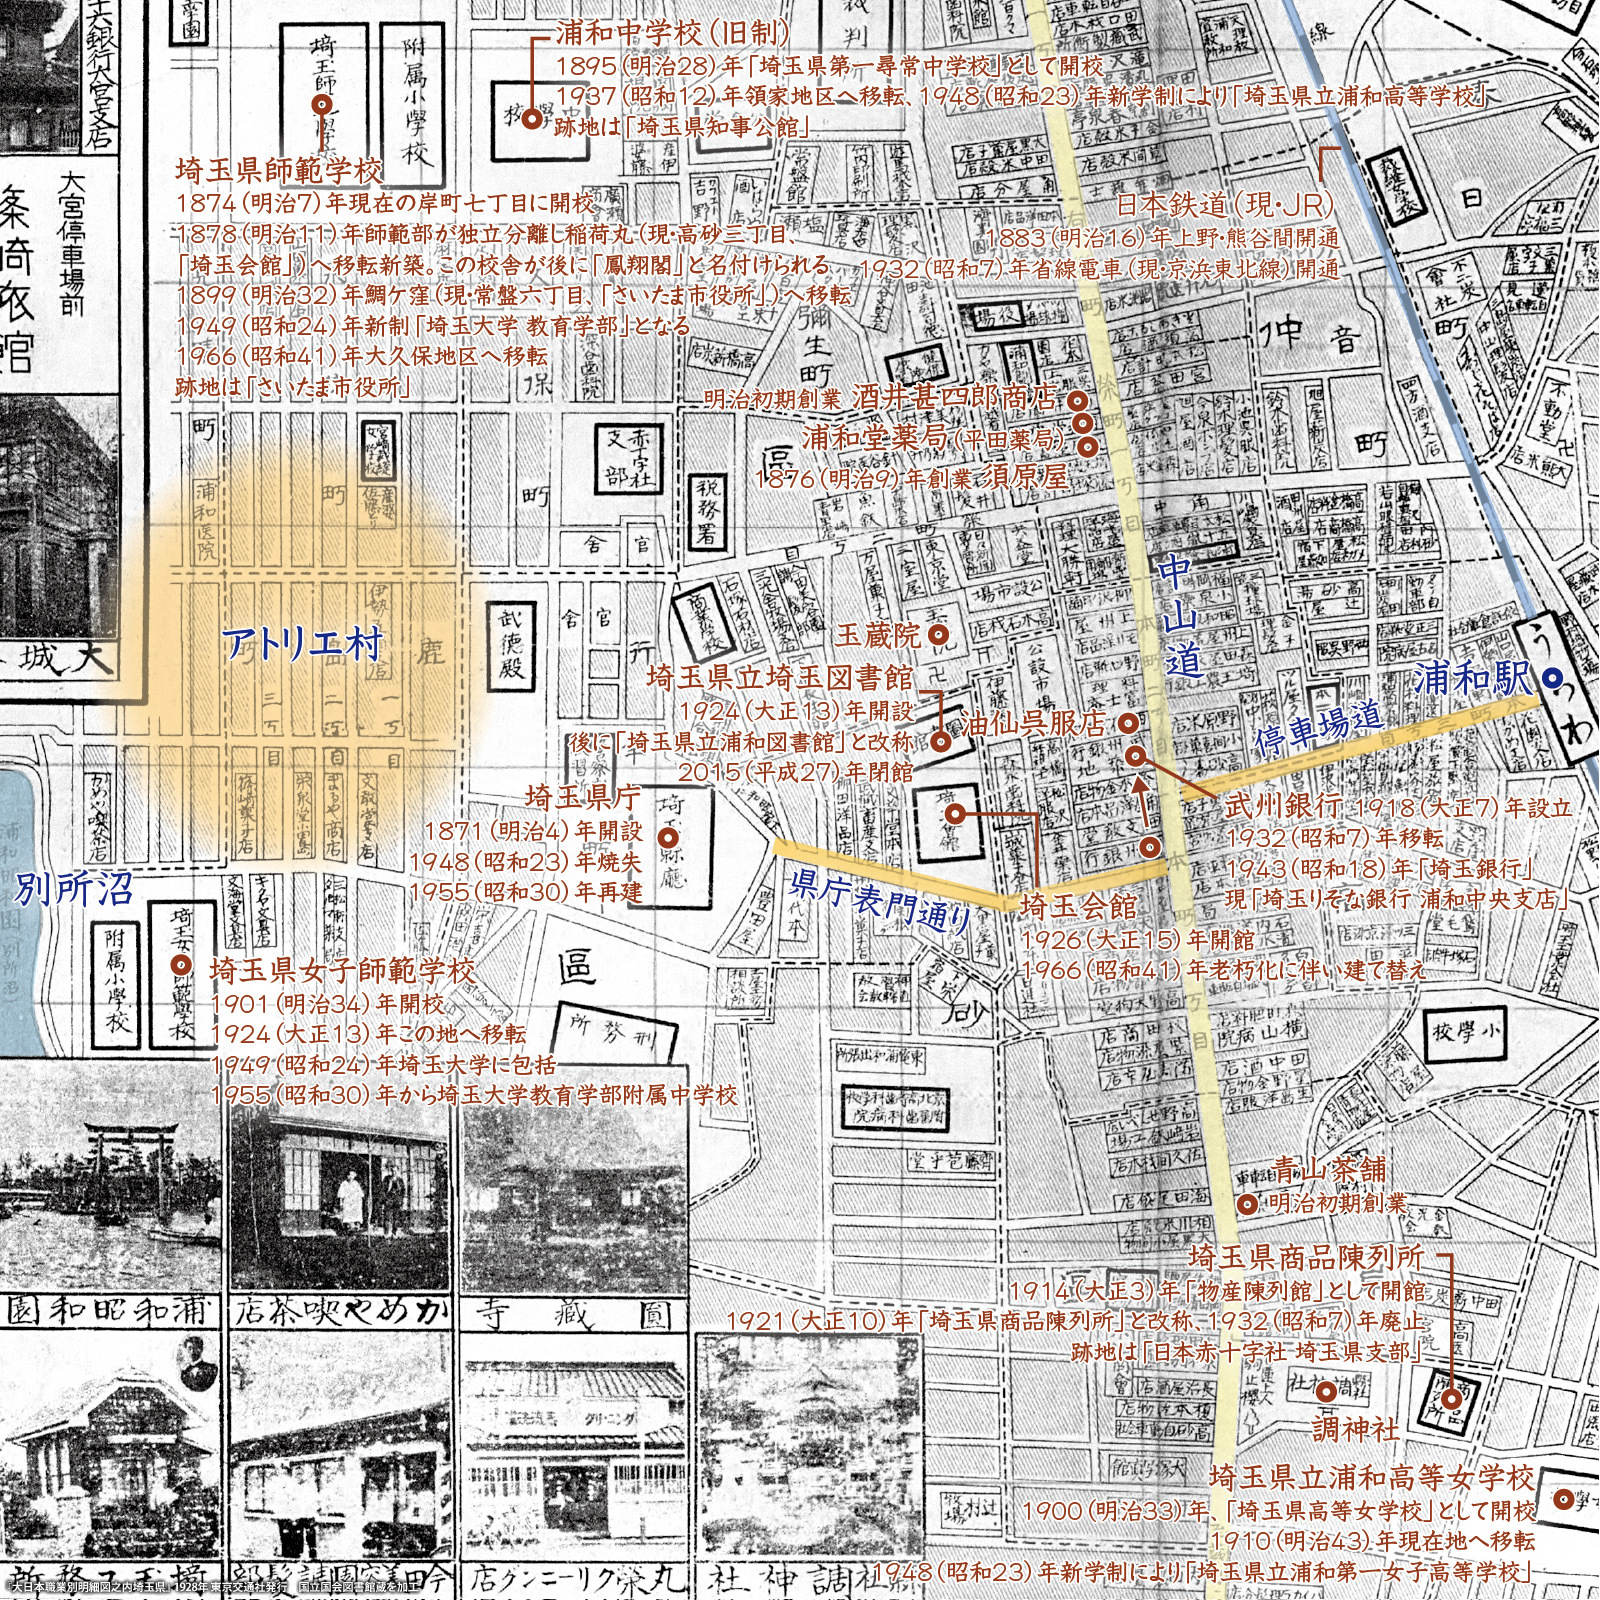 7 地図に見る浦和の街 浦和 このまちアーカイブス 不動産購入 不動産売却なら三井住友トラスト不動産